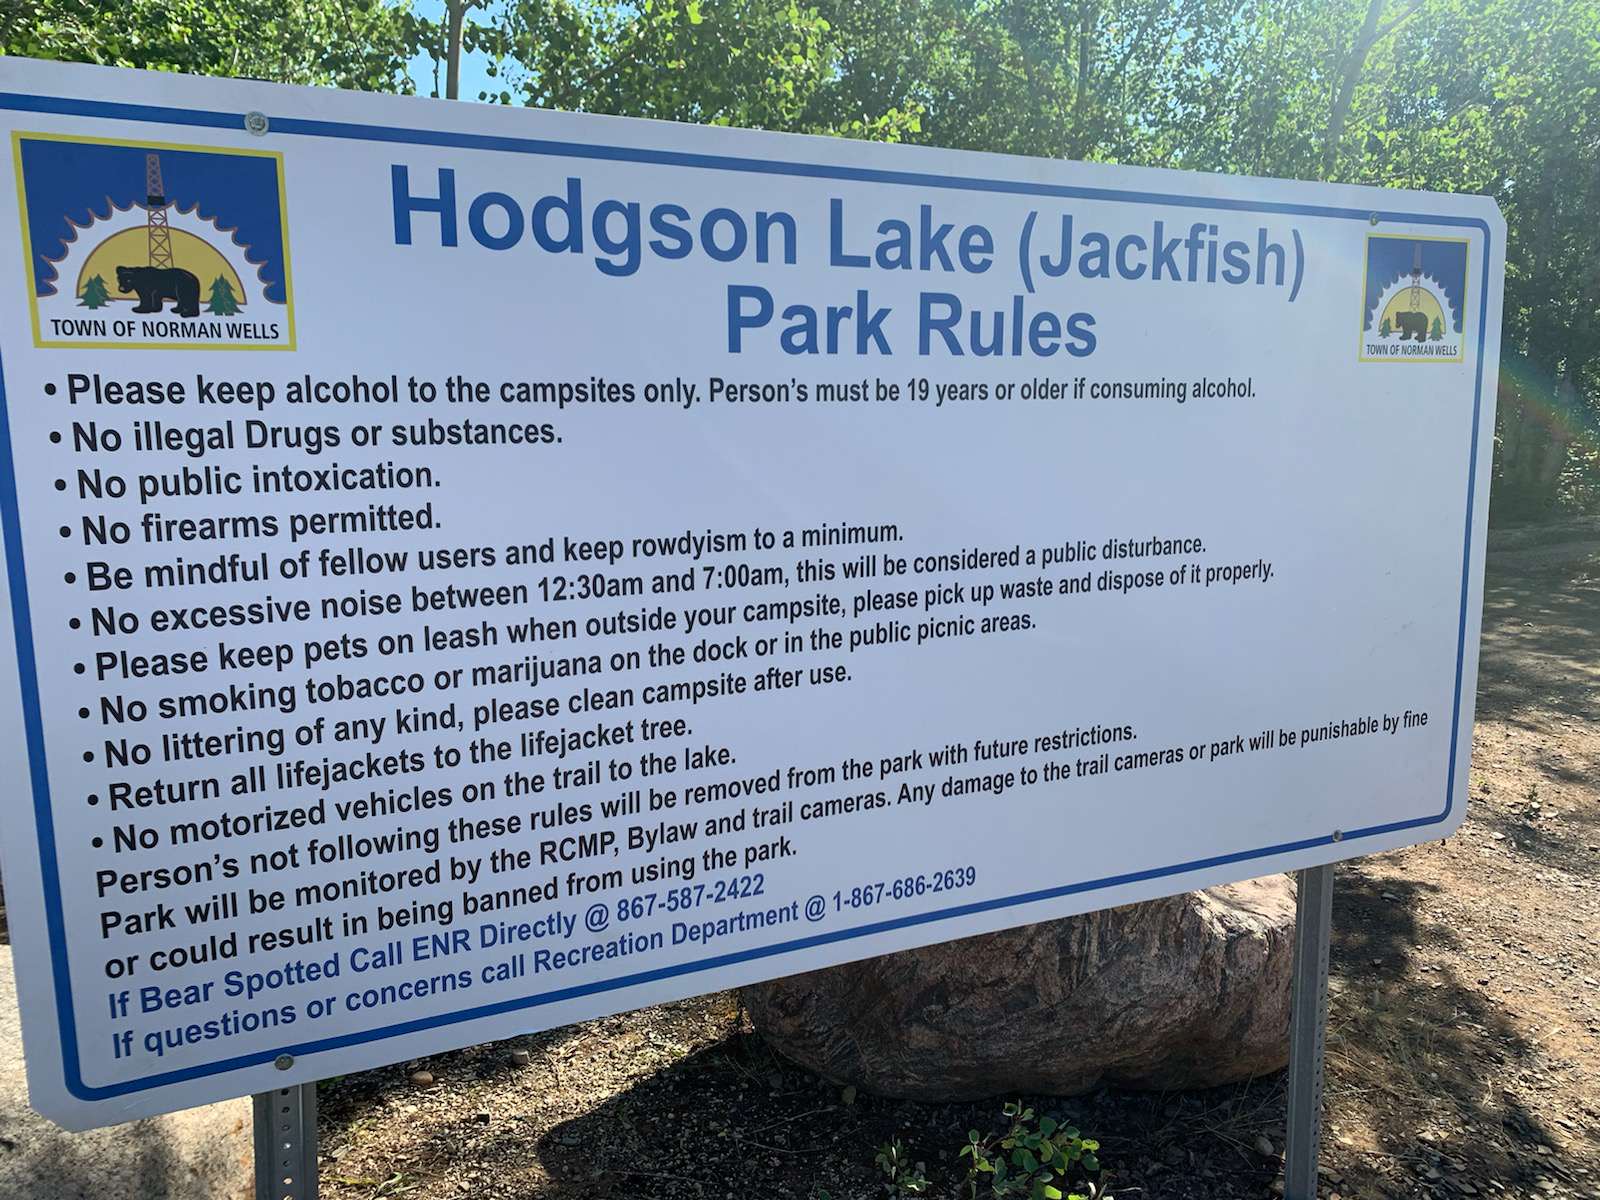 Hodgson Lake Rules 2021